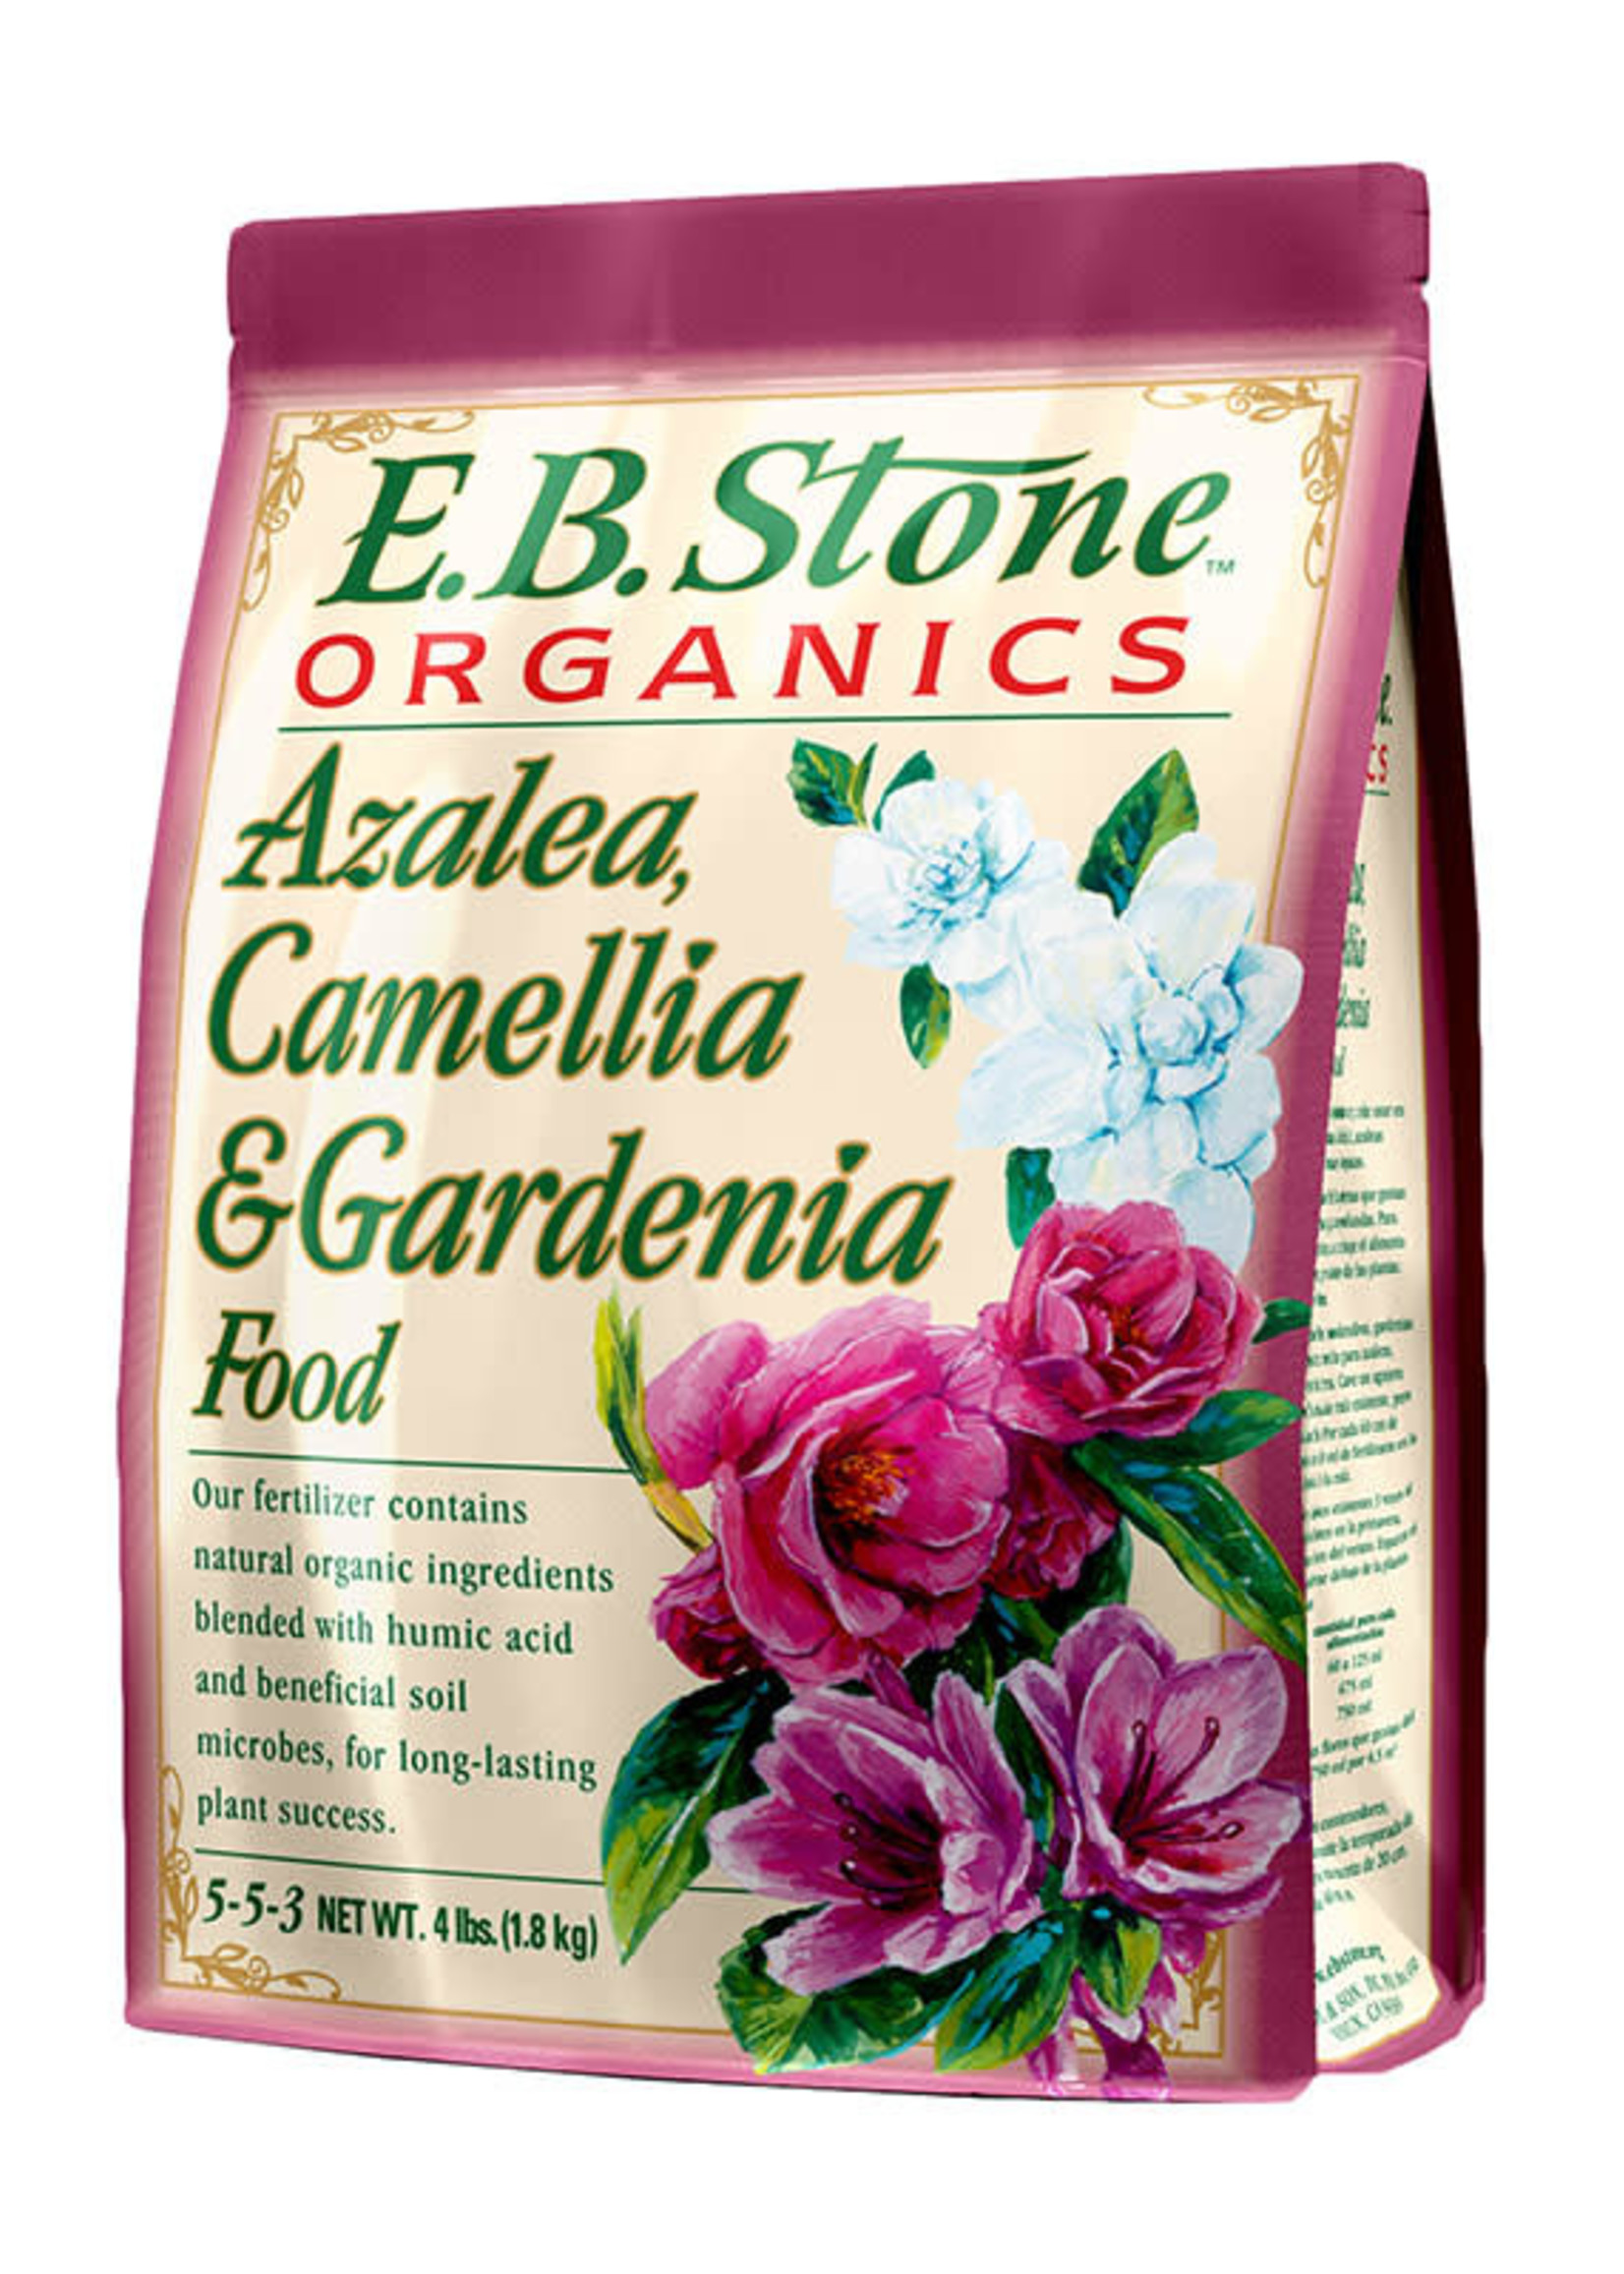 E.B. Stone Organics E.B. Stone Azalea, Camellia, Gardenia Food 5-5-3